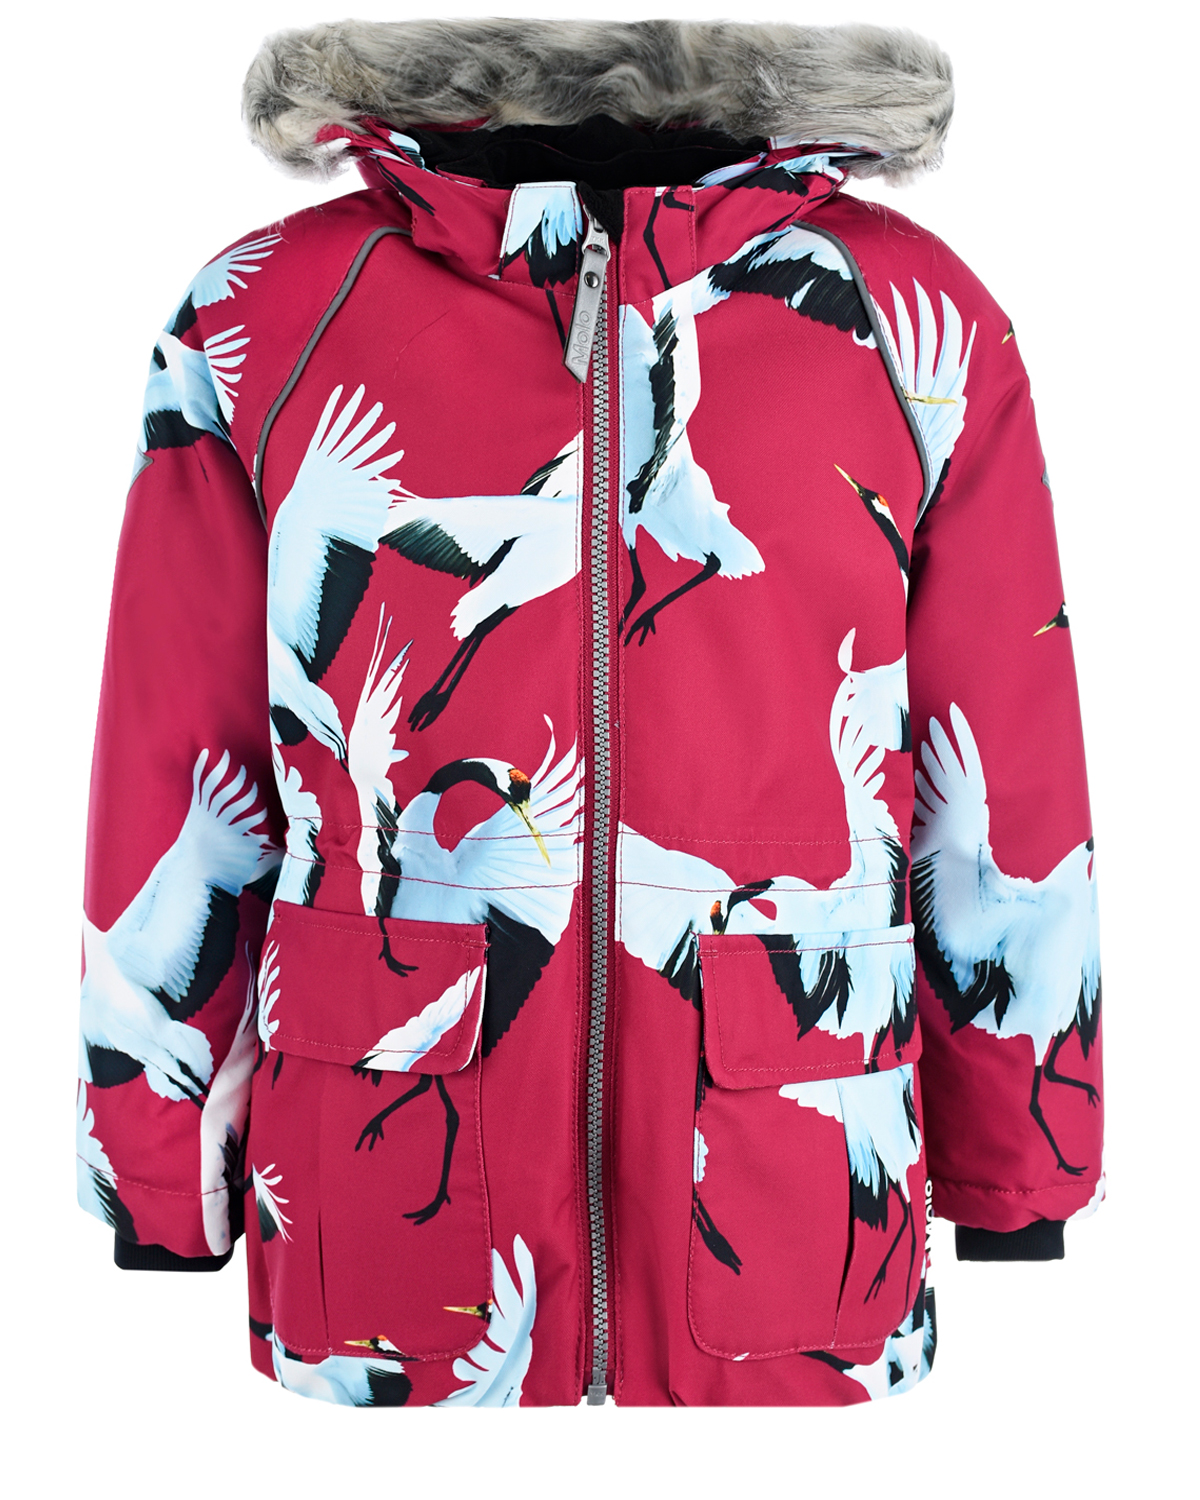 Купить Бордовая куртка с принтом птицы Molo детская, Бордовый, 100%полиэстер, 100%полиуретан